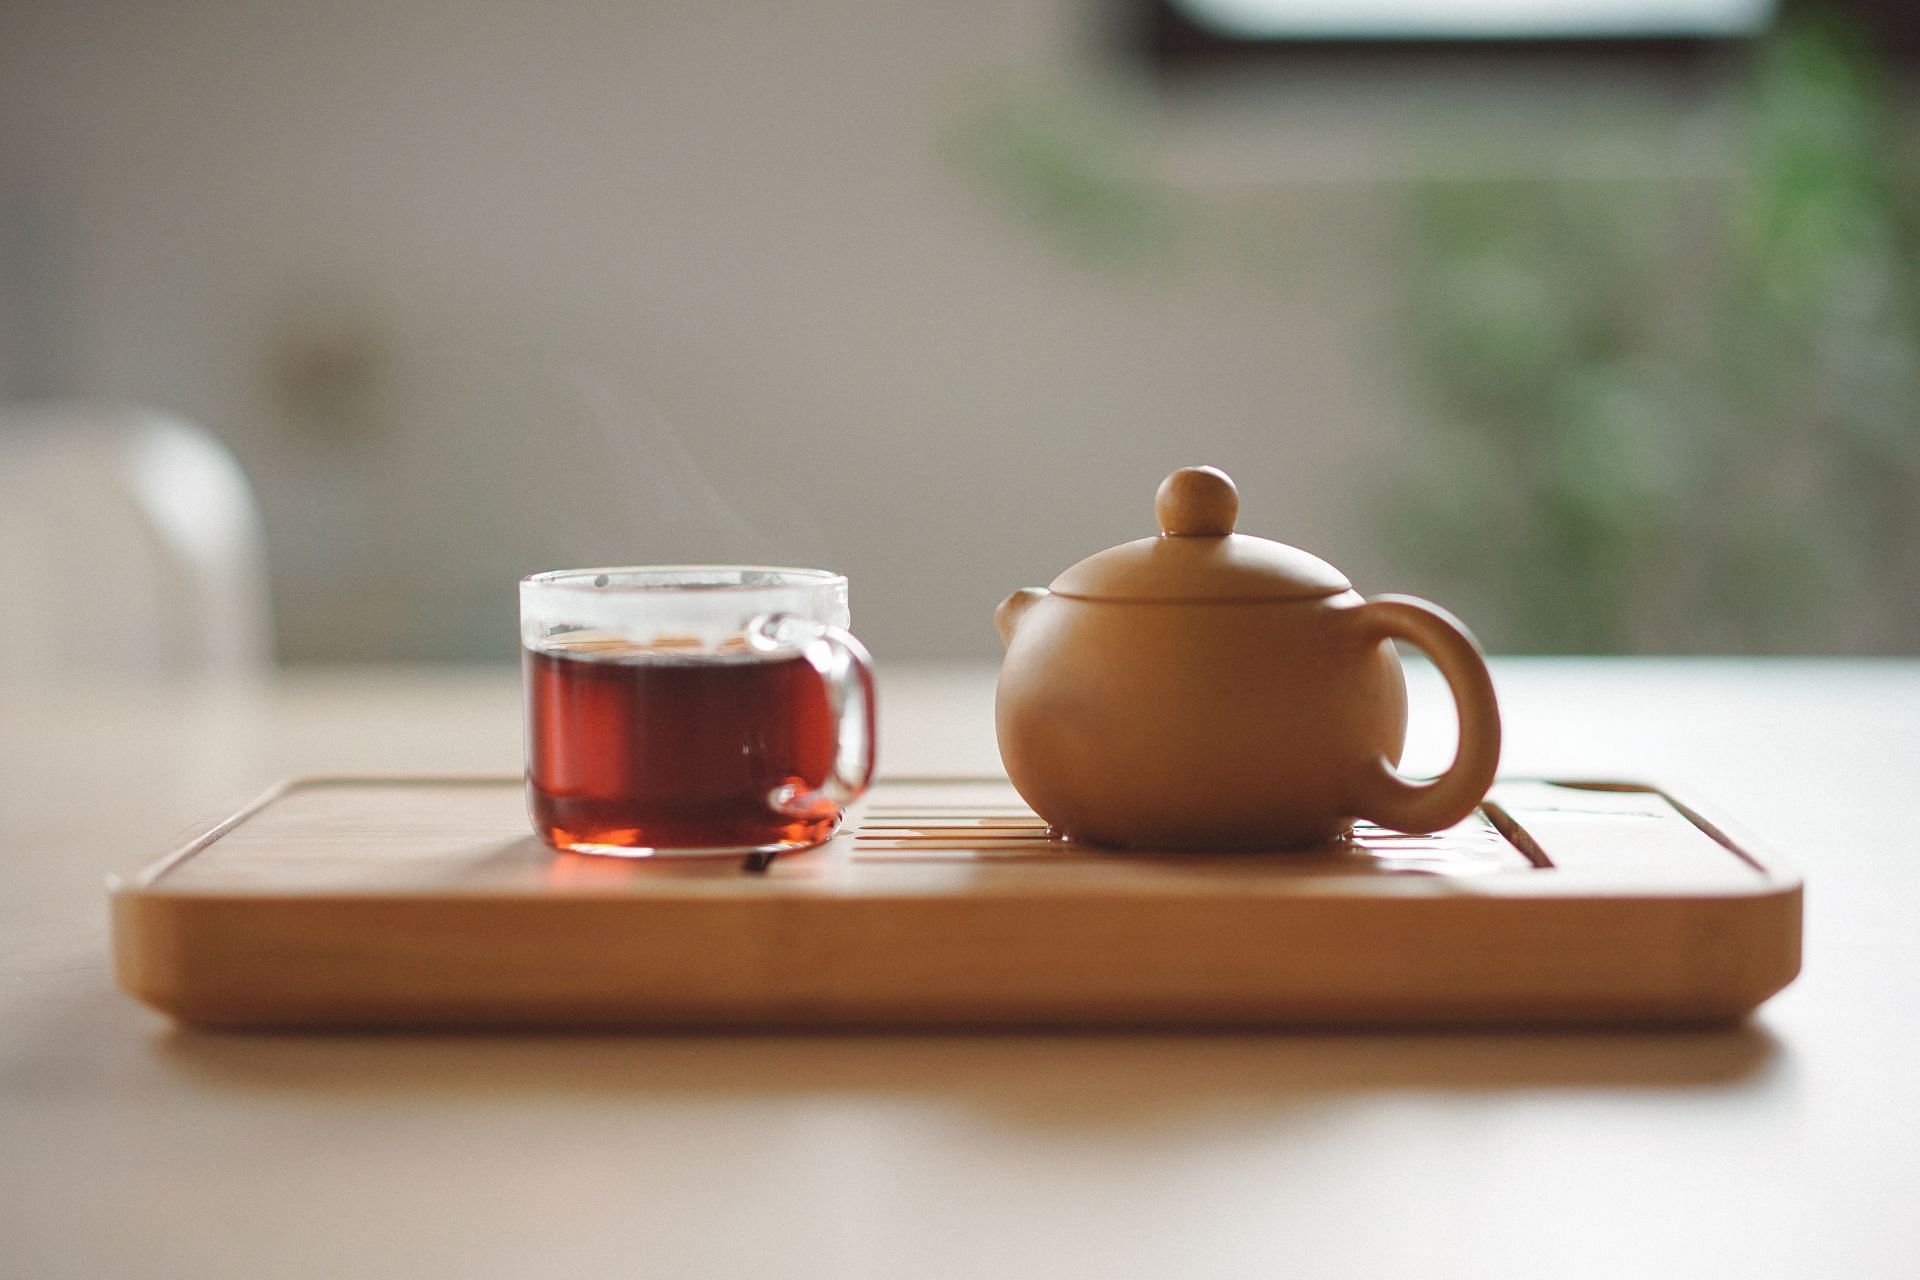 Best tea for sick people (Image via Unsplash/Manki Kim)